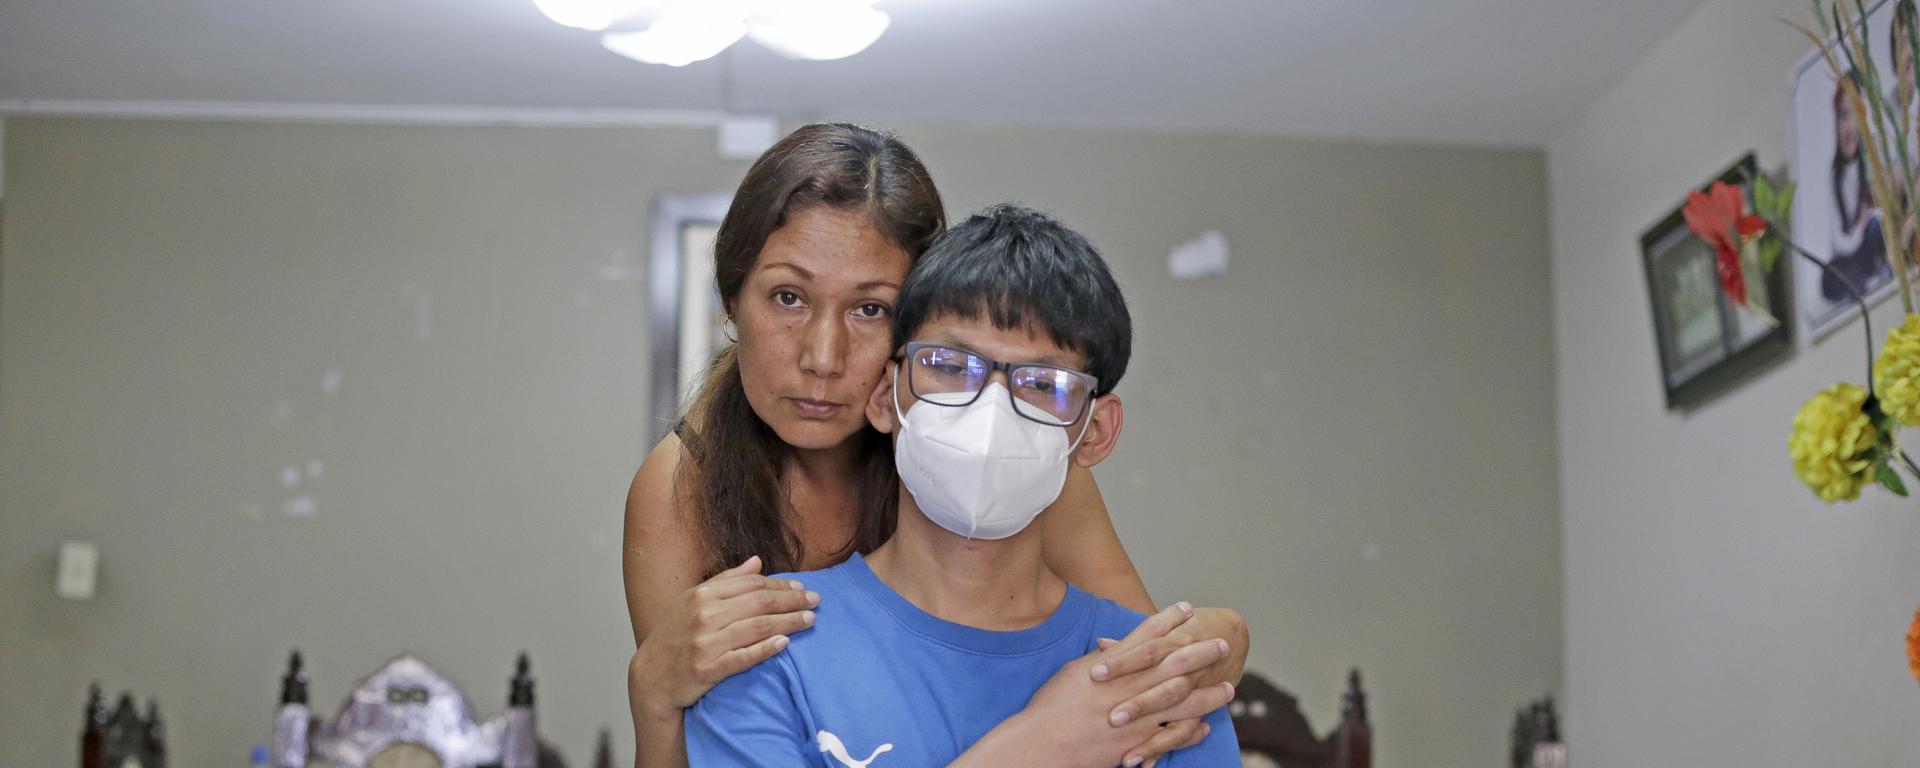 Nuevo caso de ameba “comecerebros” en joven de 17 años: su madre lucha por conseguir medicamento que vale casi 20.000 soles